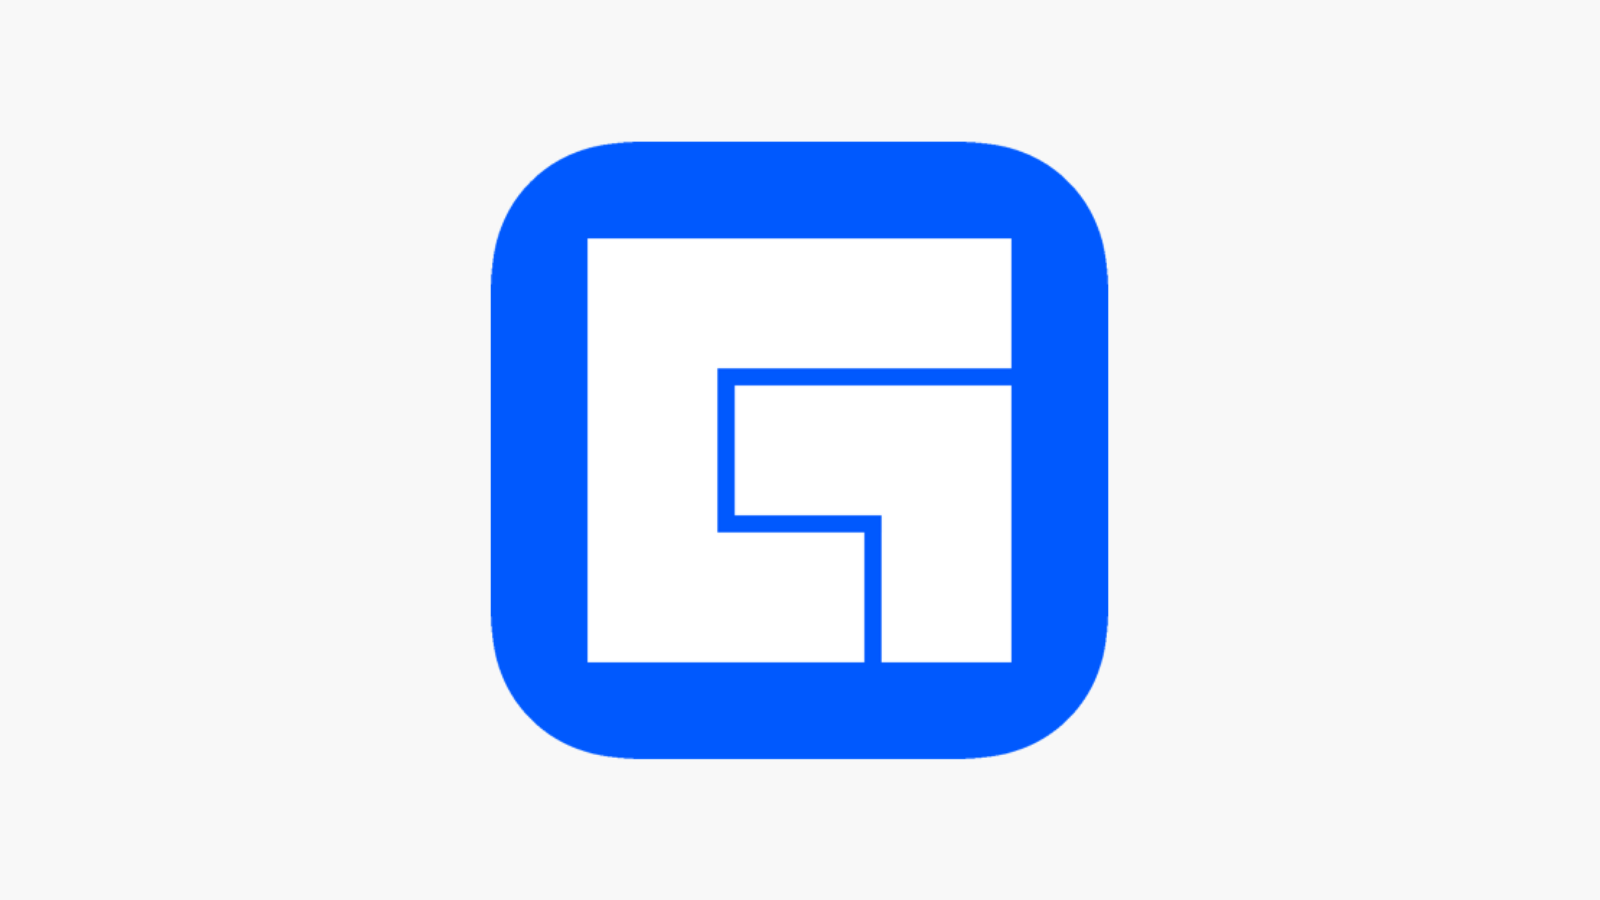 Facebook Gaming logo